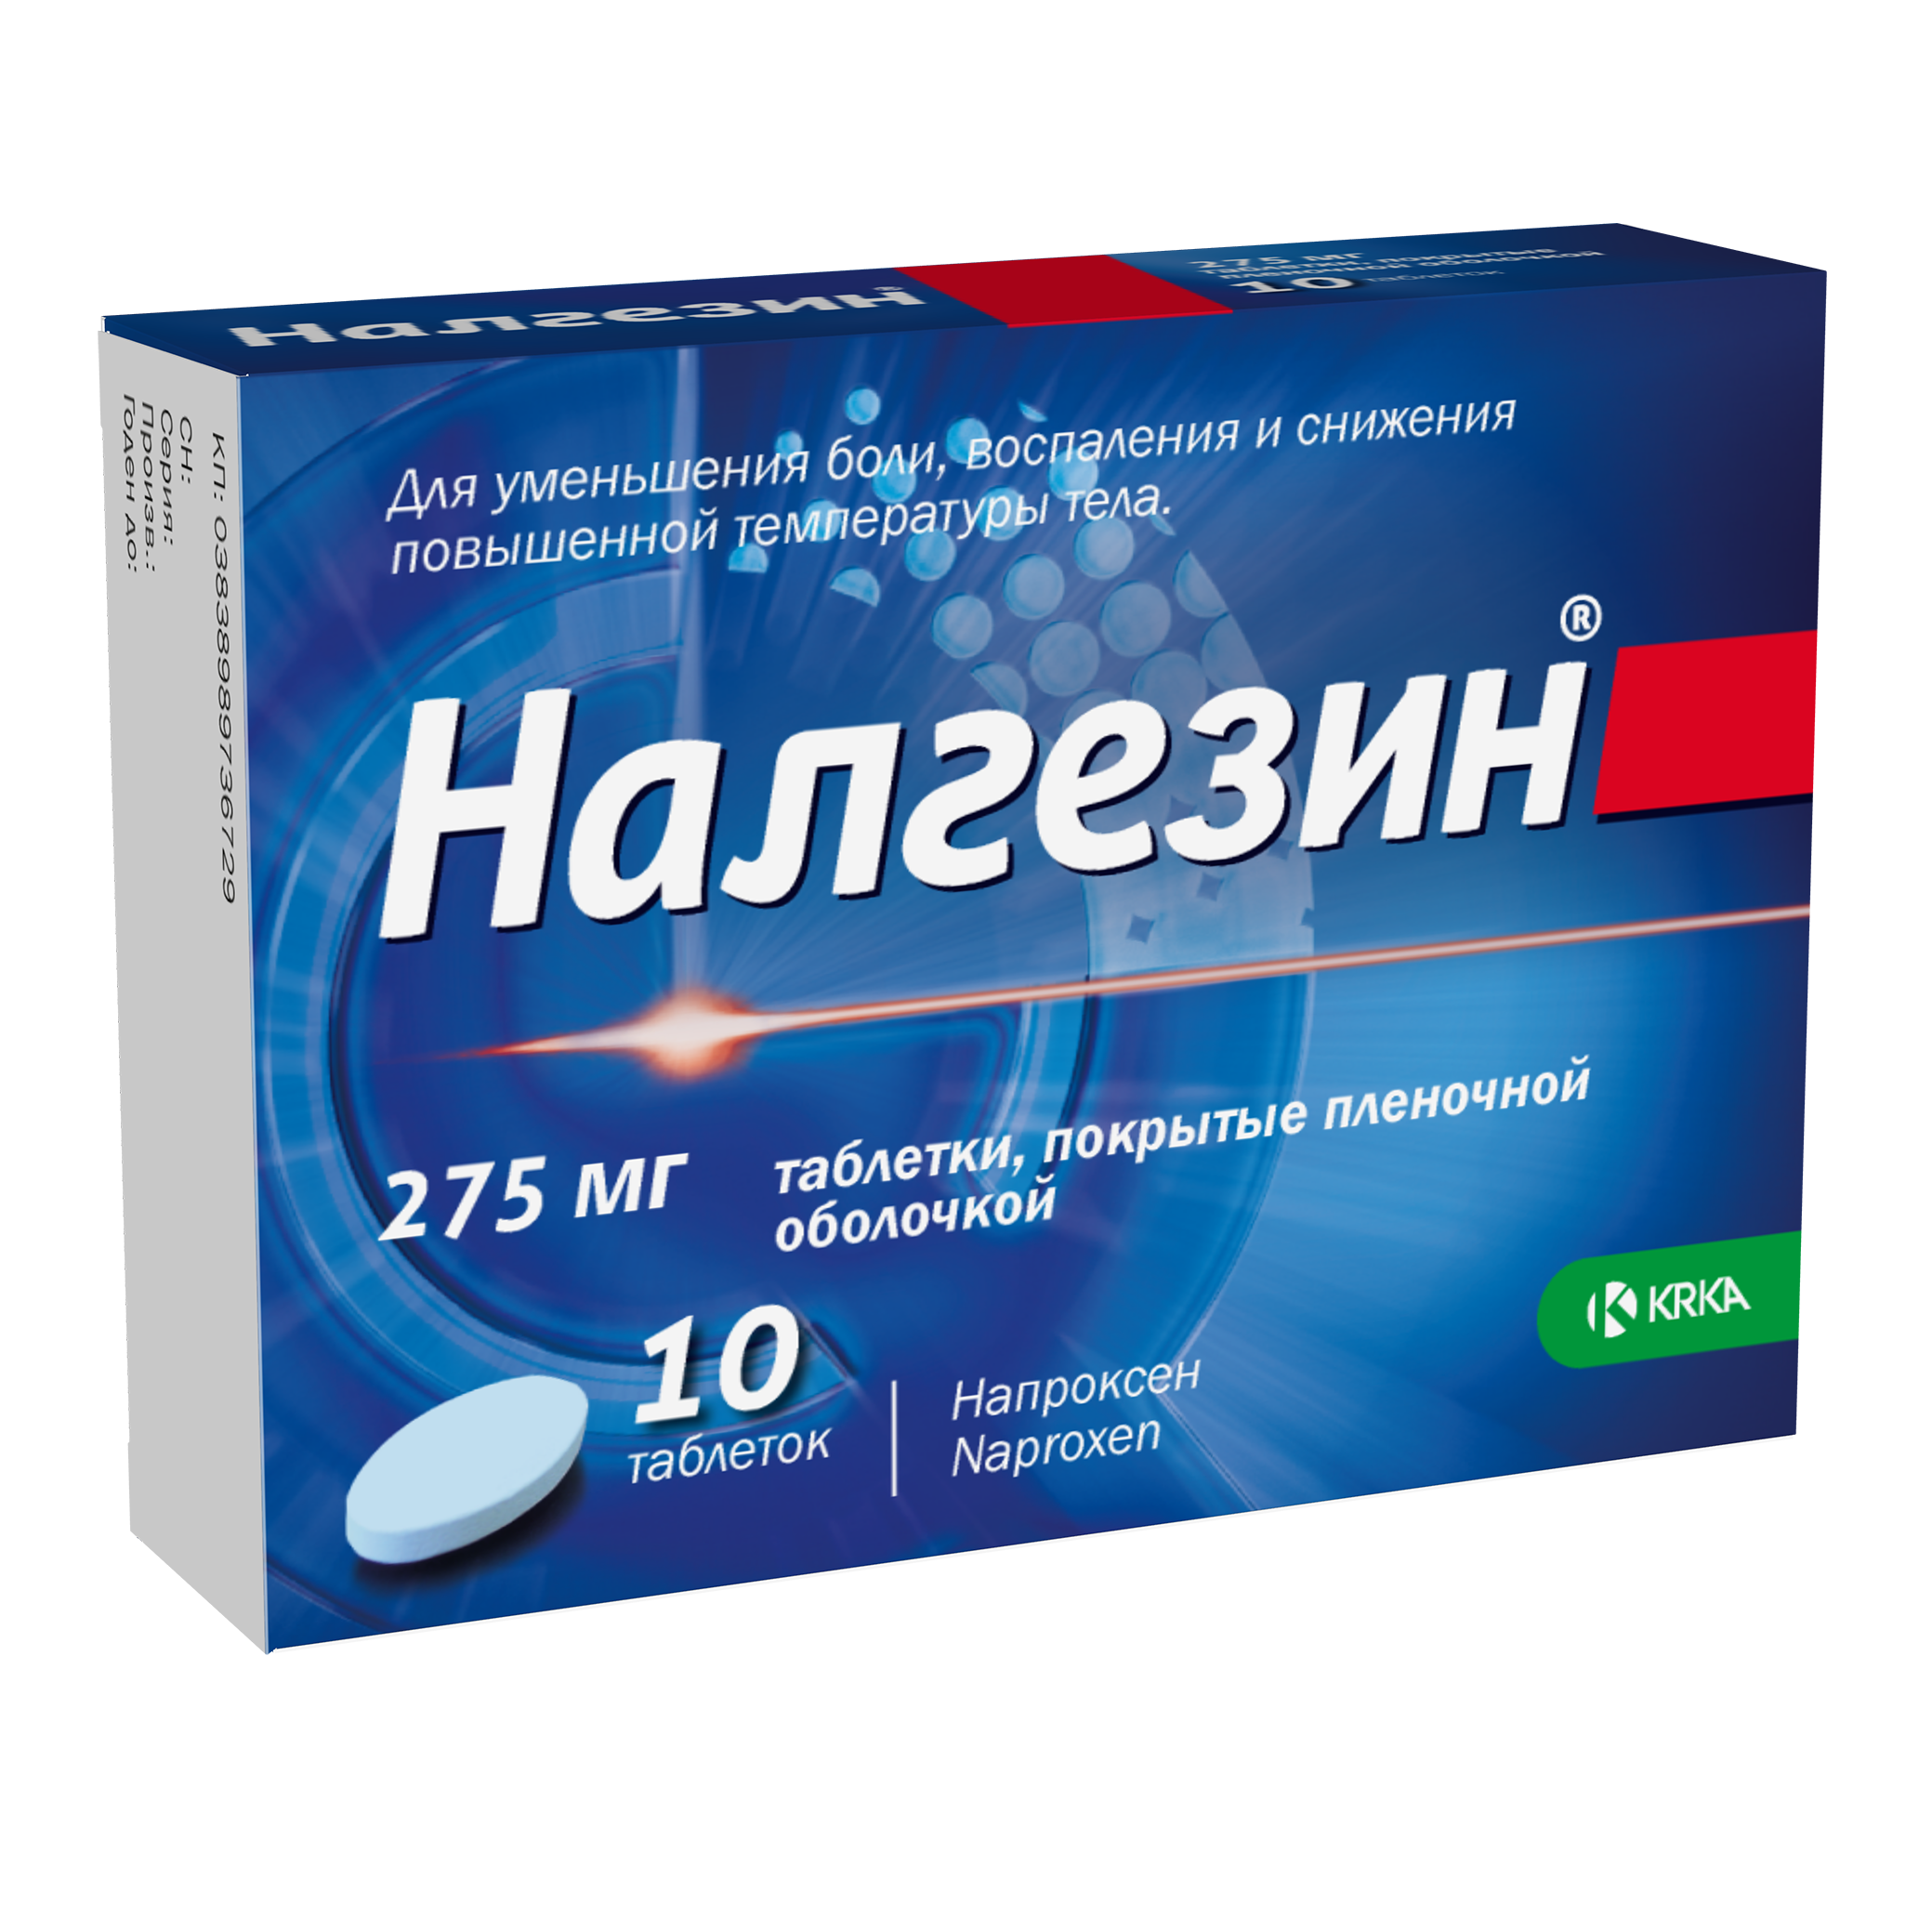 Налгезин, таблетки покрыт. плен. об. 275 мг, 10 шт.